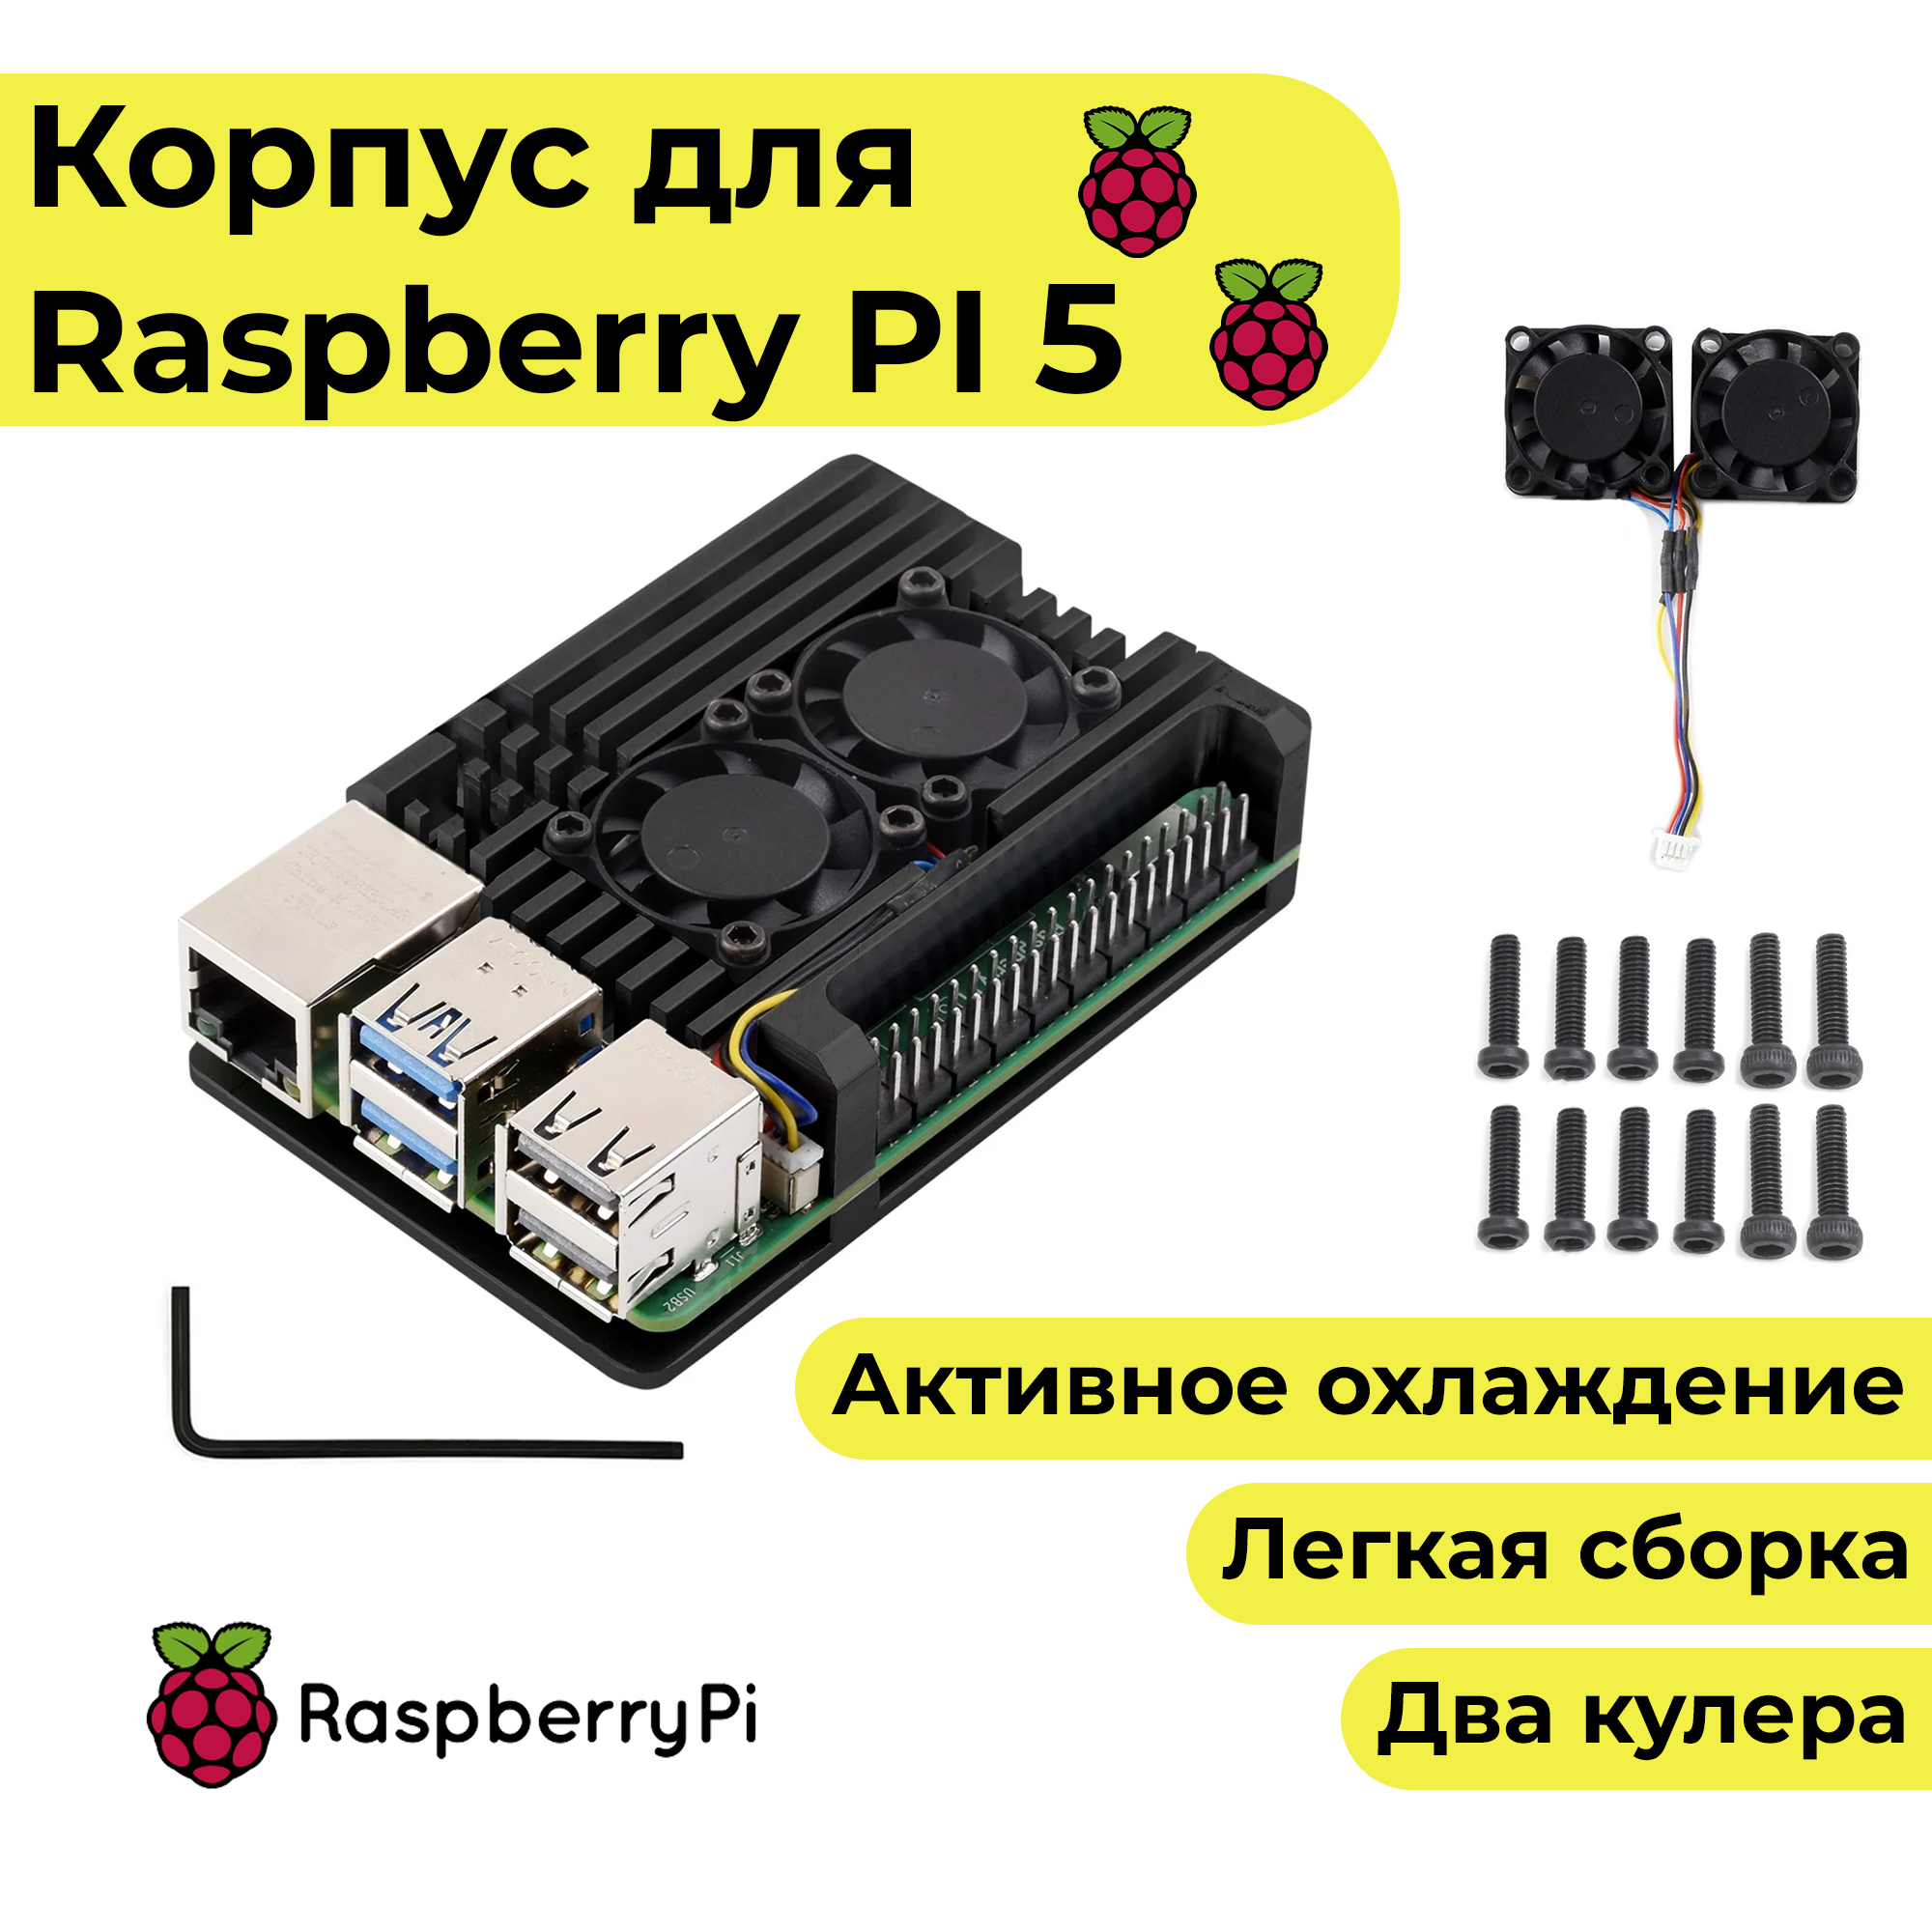 Металлический корпус для Raspberry Pi 5 (кейс чехол радиатор)